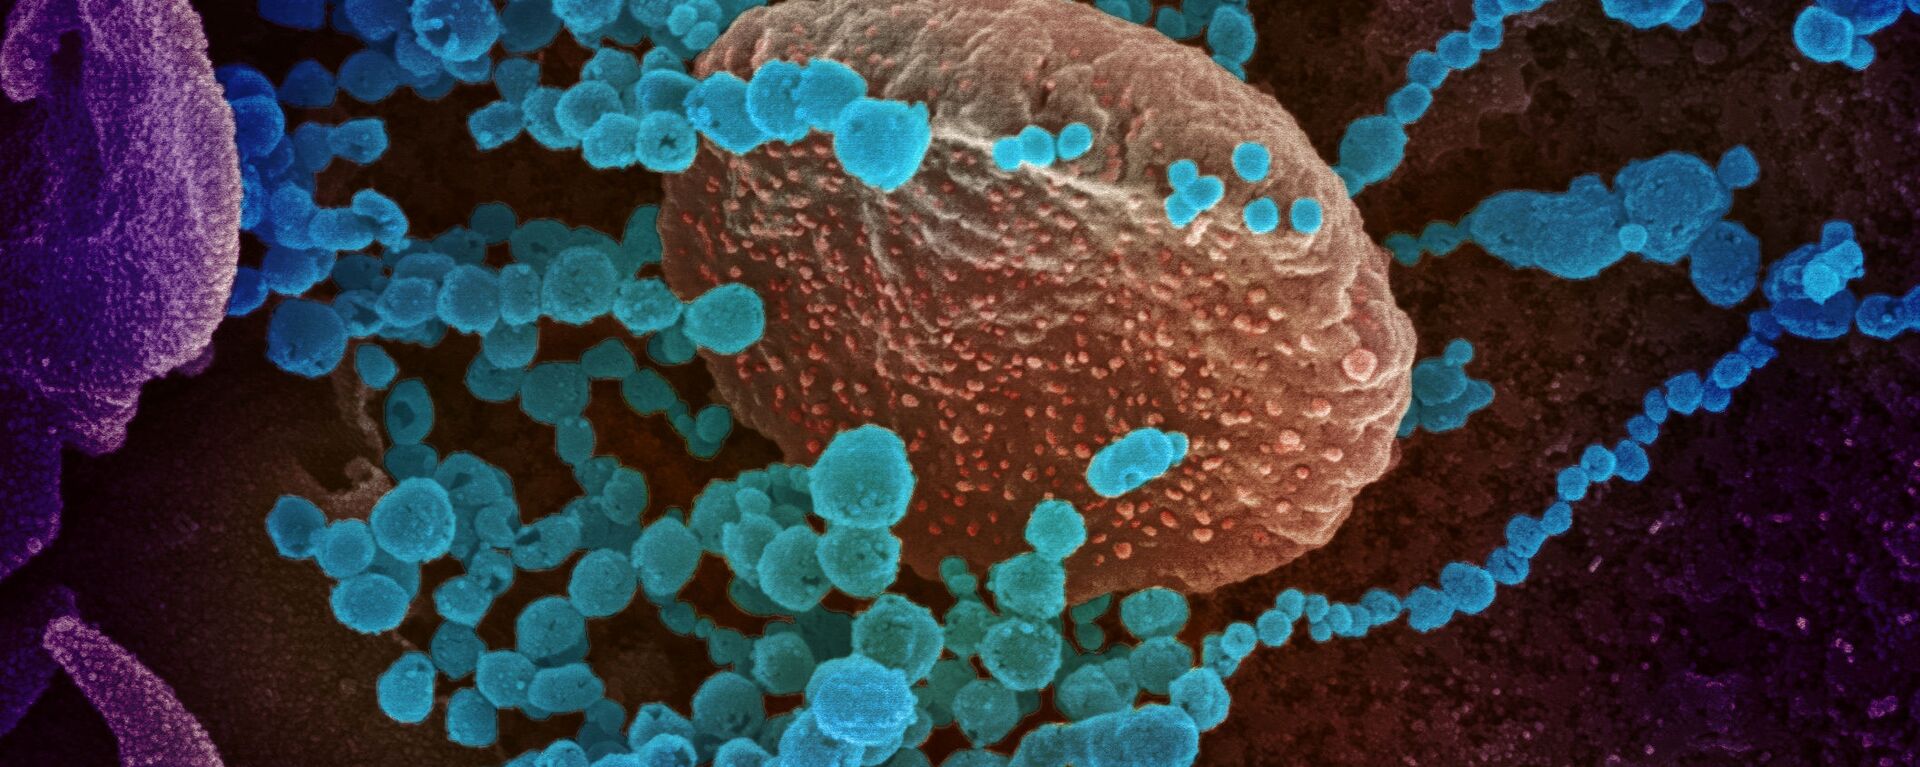 Вид на зараженную коронавирусом  клетку под микроскопом  - Sputnik Грузия, 1920, 24.06.2021